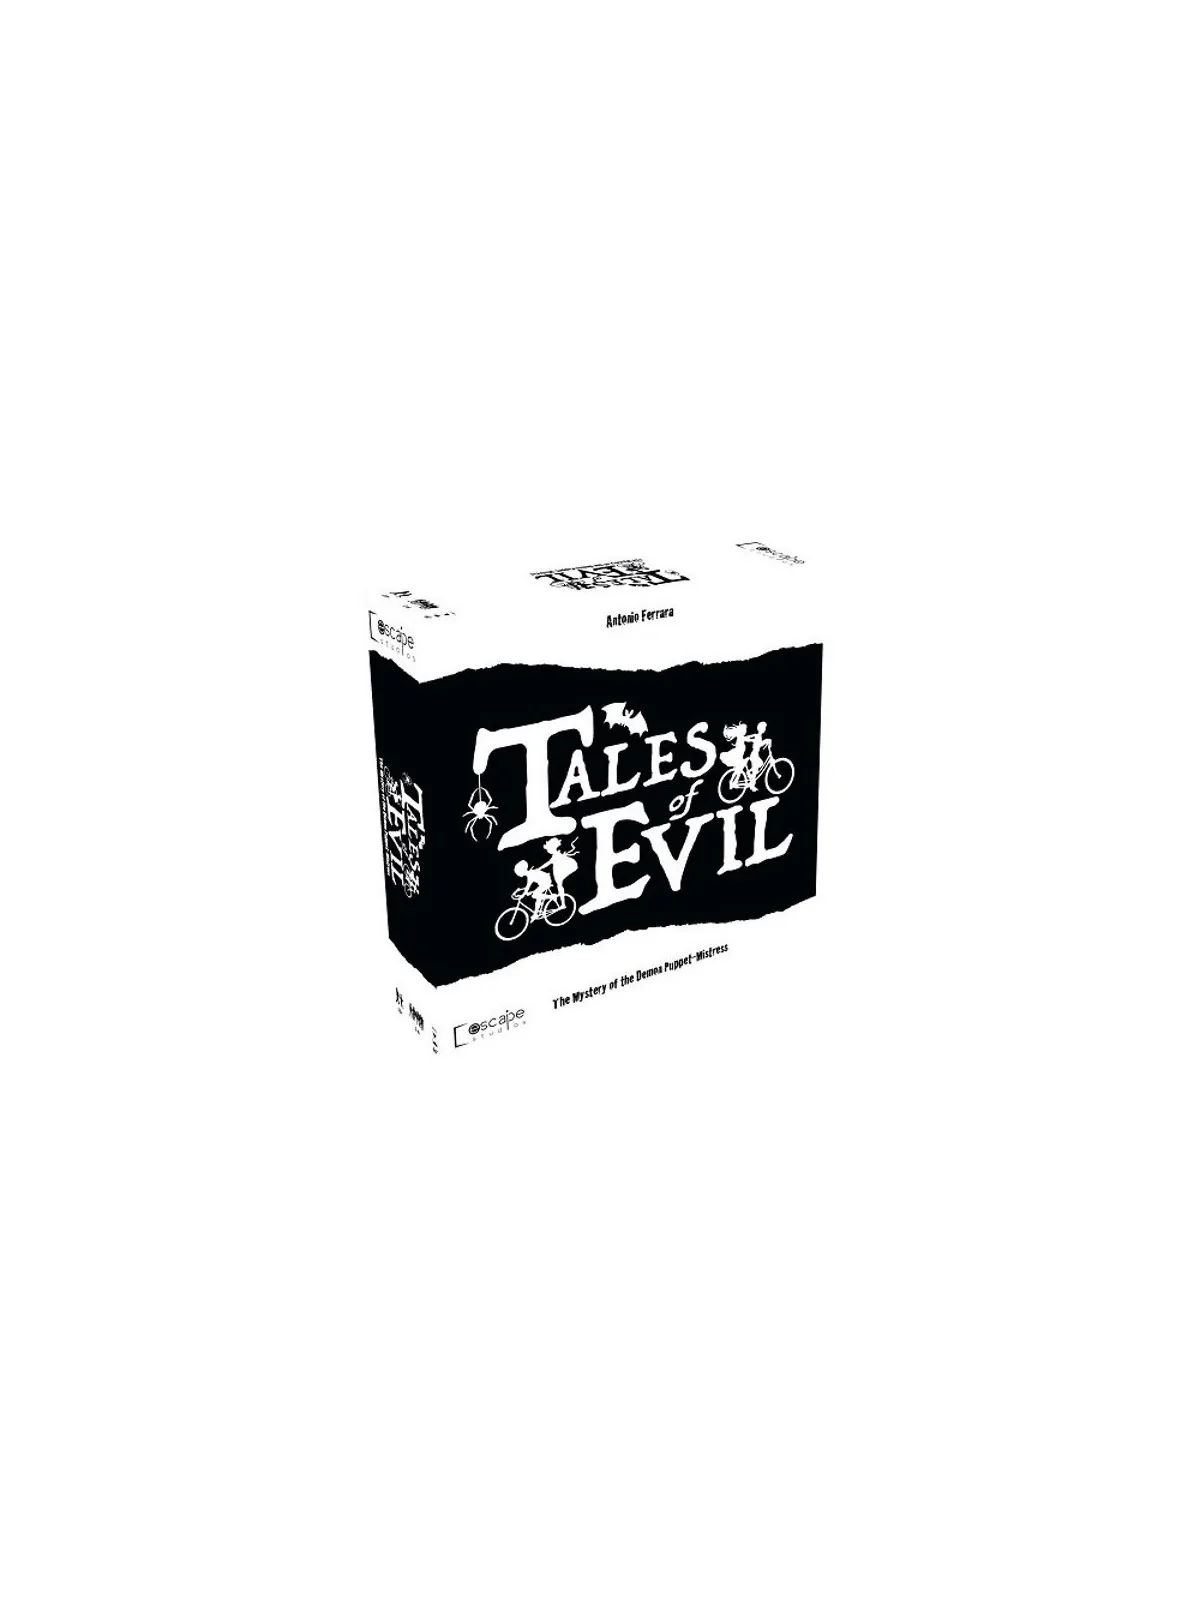 Comprar Tales of Evil barato al mejor precio 62,95 € de Last Level